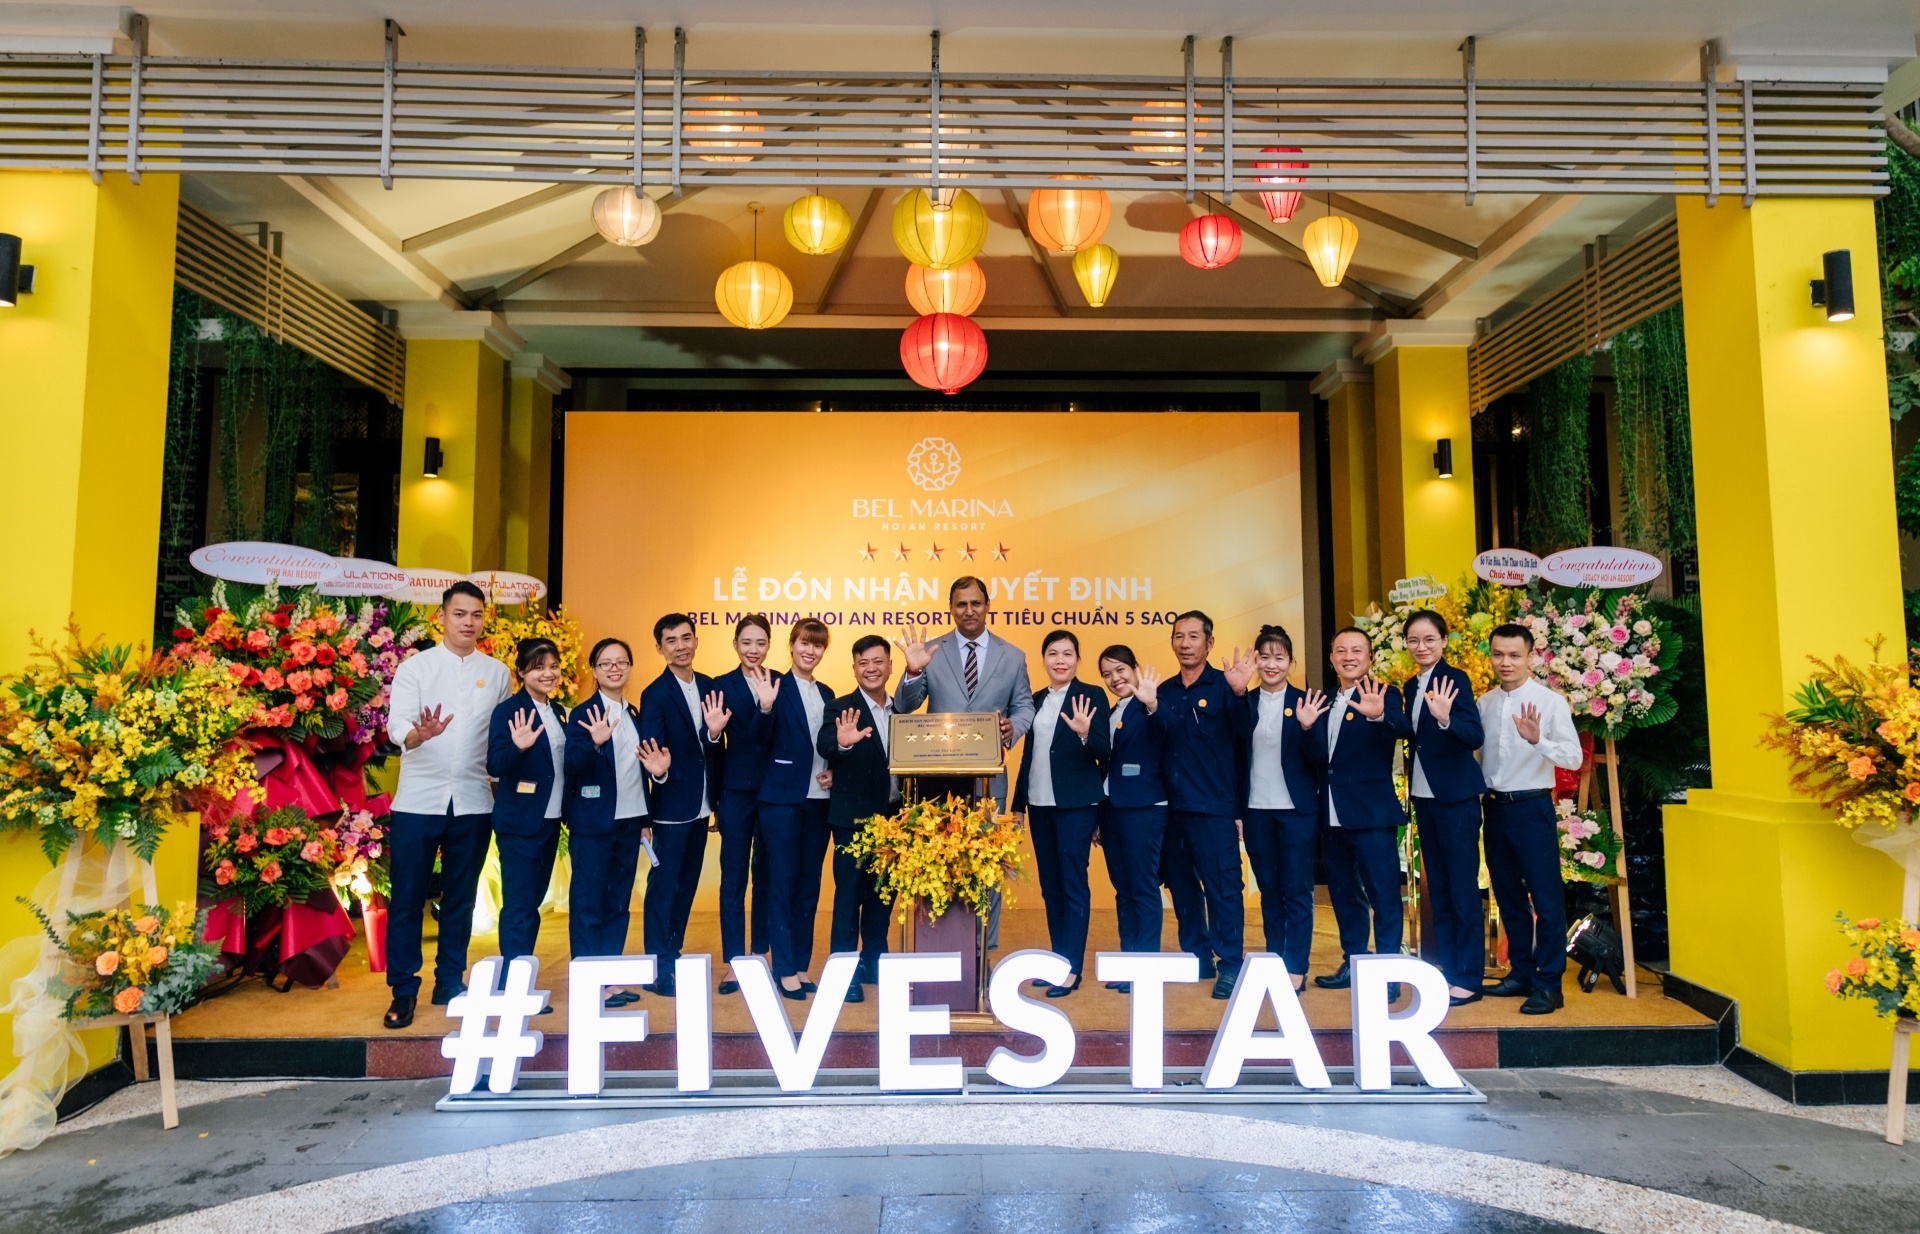 VNAT awards 5-star certification to Bel Marina Hoi An Resort